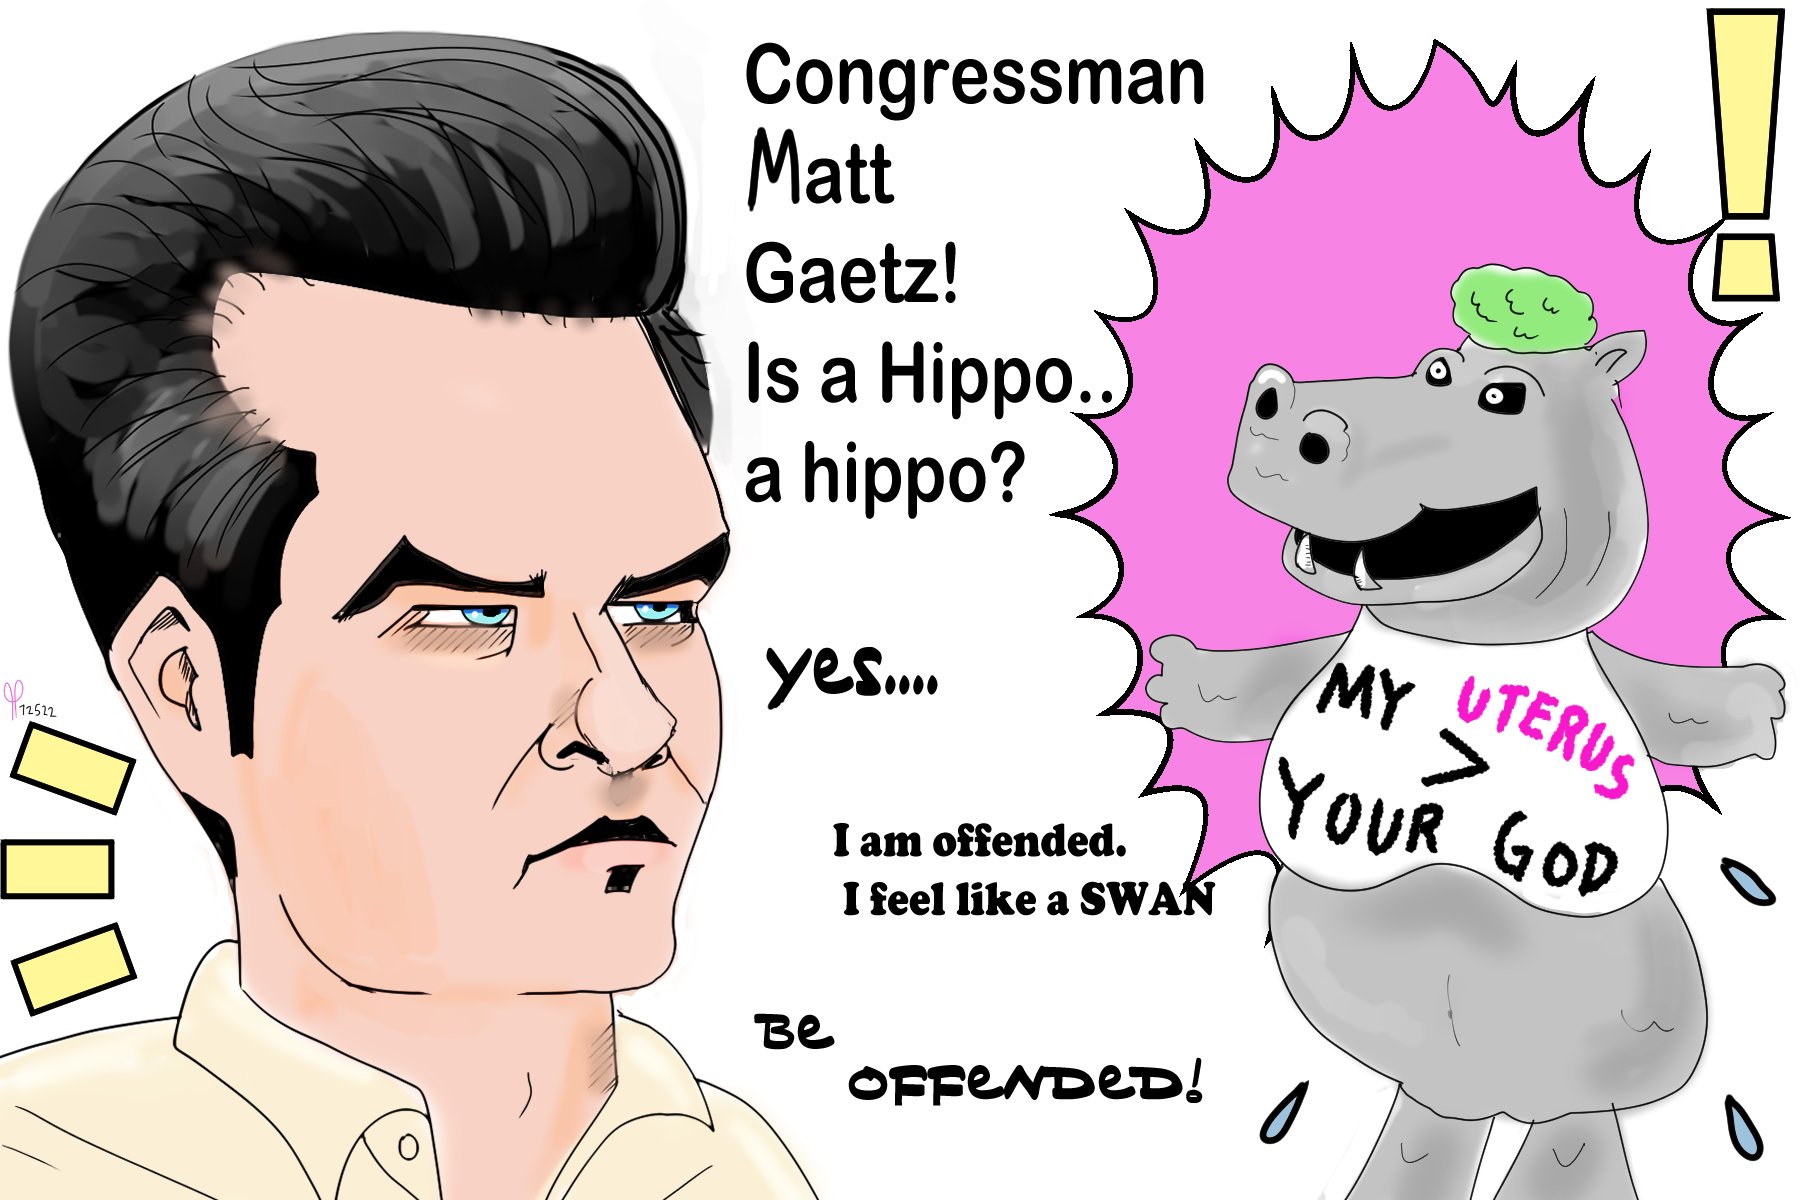 Congressman Matt Gaetz Jack Posobiec political cartoons post thumbnail image